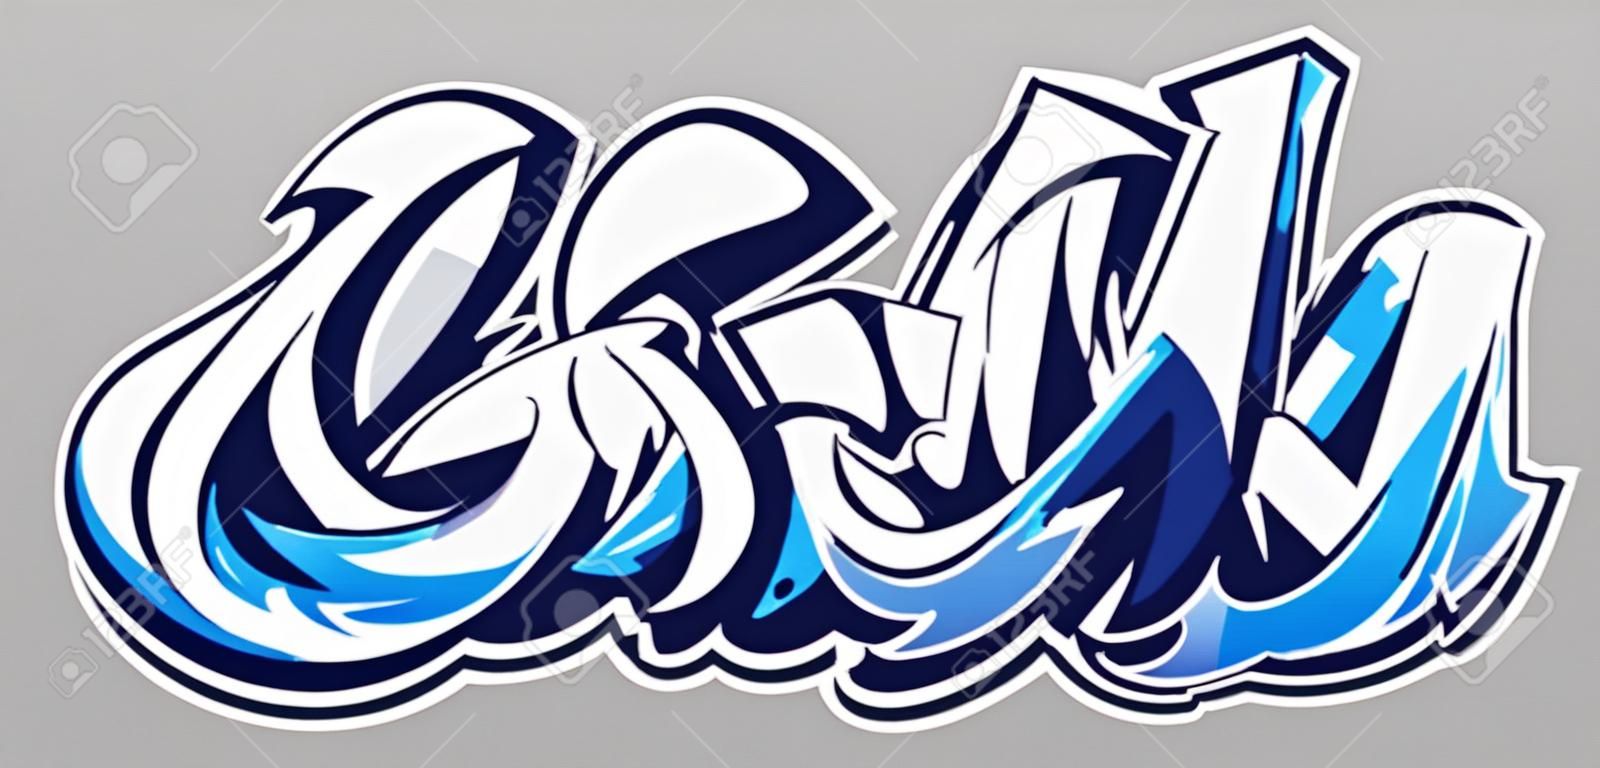 Big Up lettrage de vecteur de couleur bleue sur fond gris. Art du graffiti de style sauvage dynamique. Illustration abstraite de trois lettres dimensionnelles.